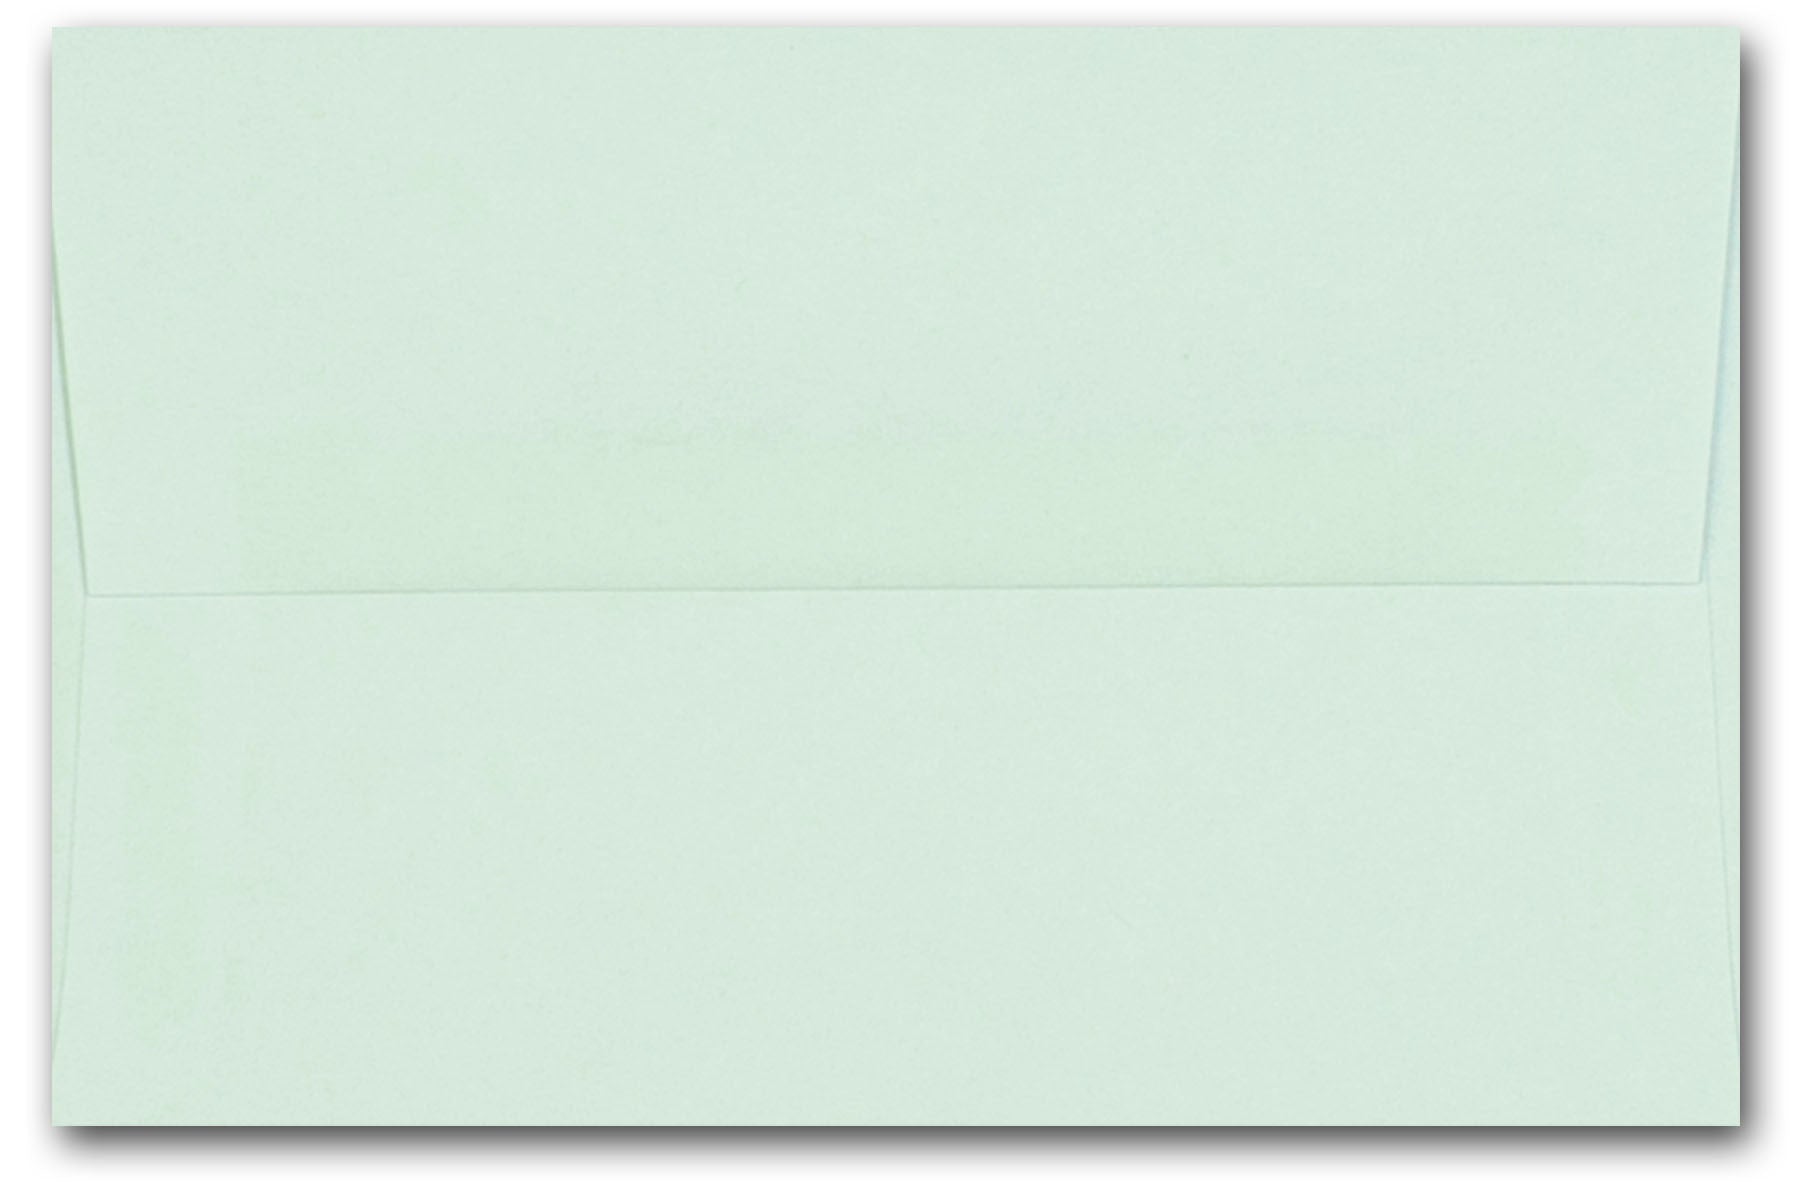 Leader Opaque 70 lb A7 Envelopes for 5x7 Invitations - CutCardStock